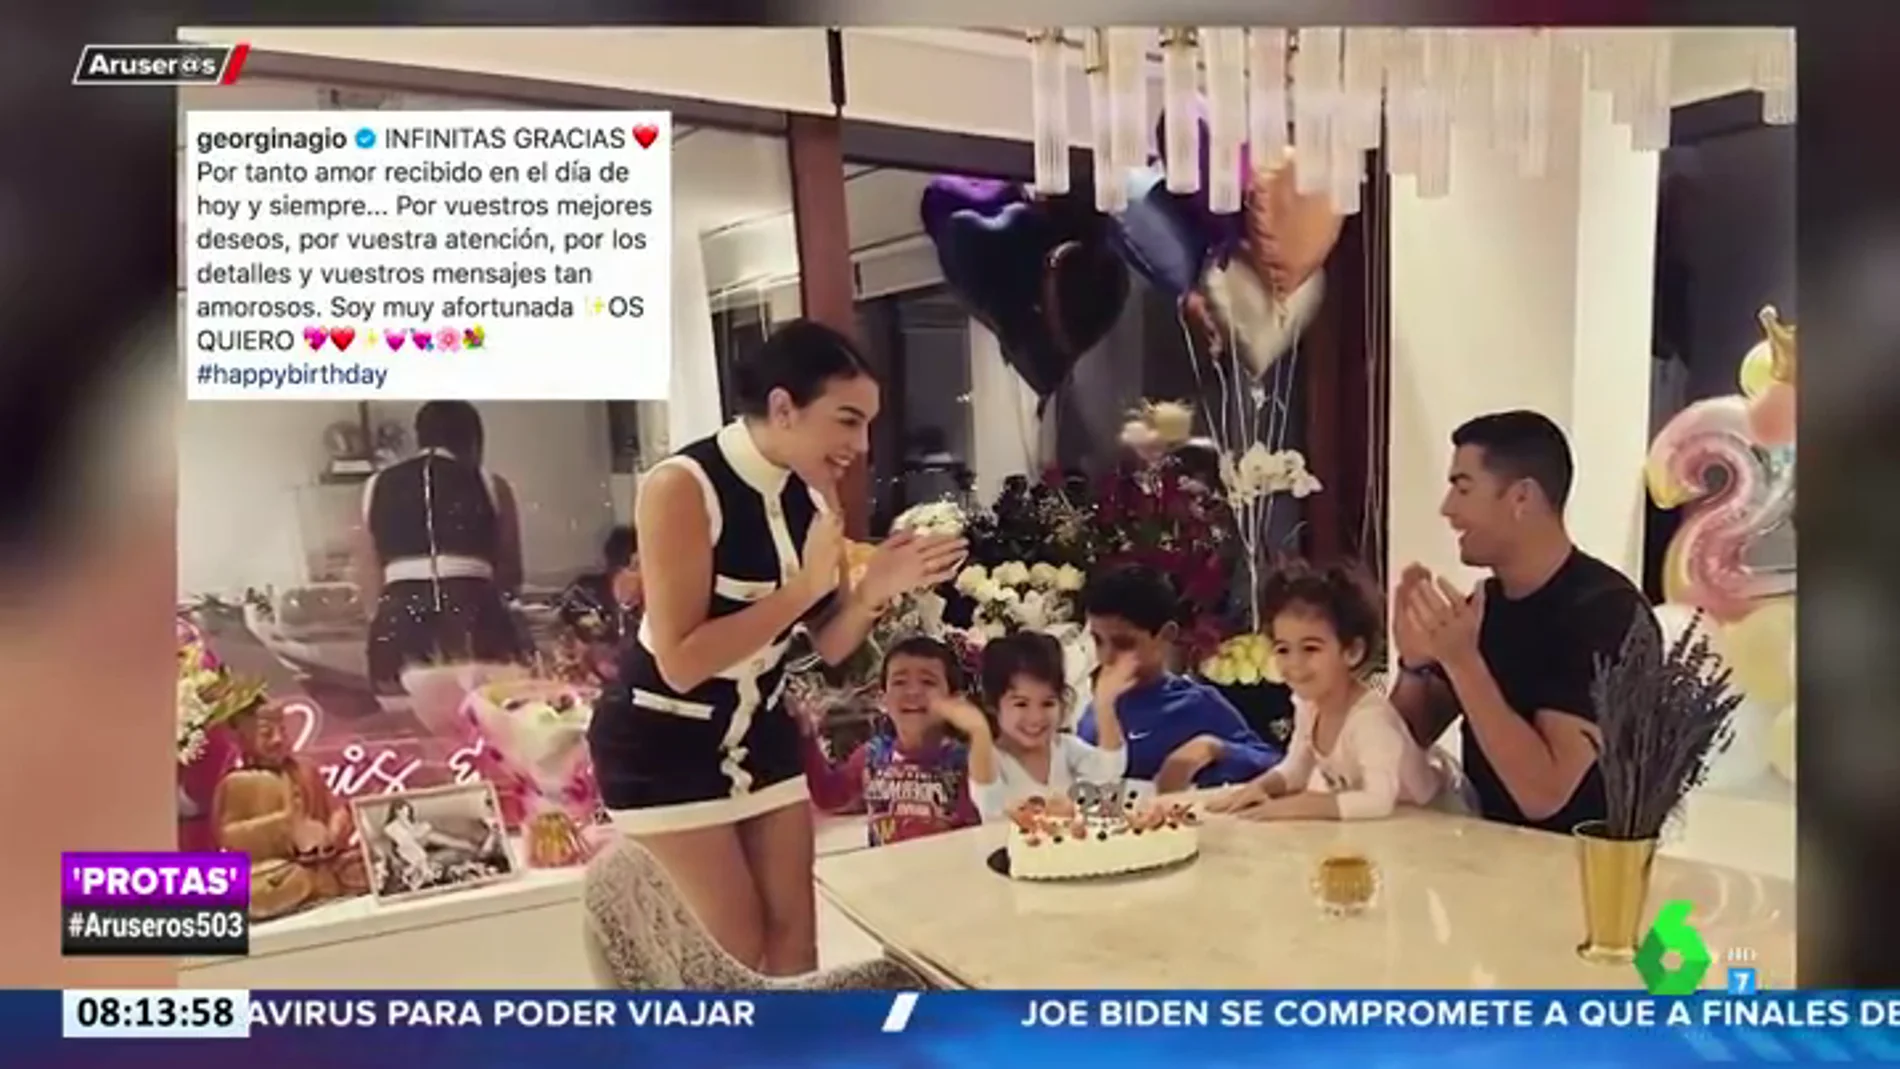 Ramos de flores, globos y cena en familia: las imágenes del cumple de Georgina Rodríguez junto a Cristiano Ronaldo